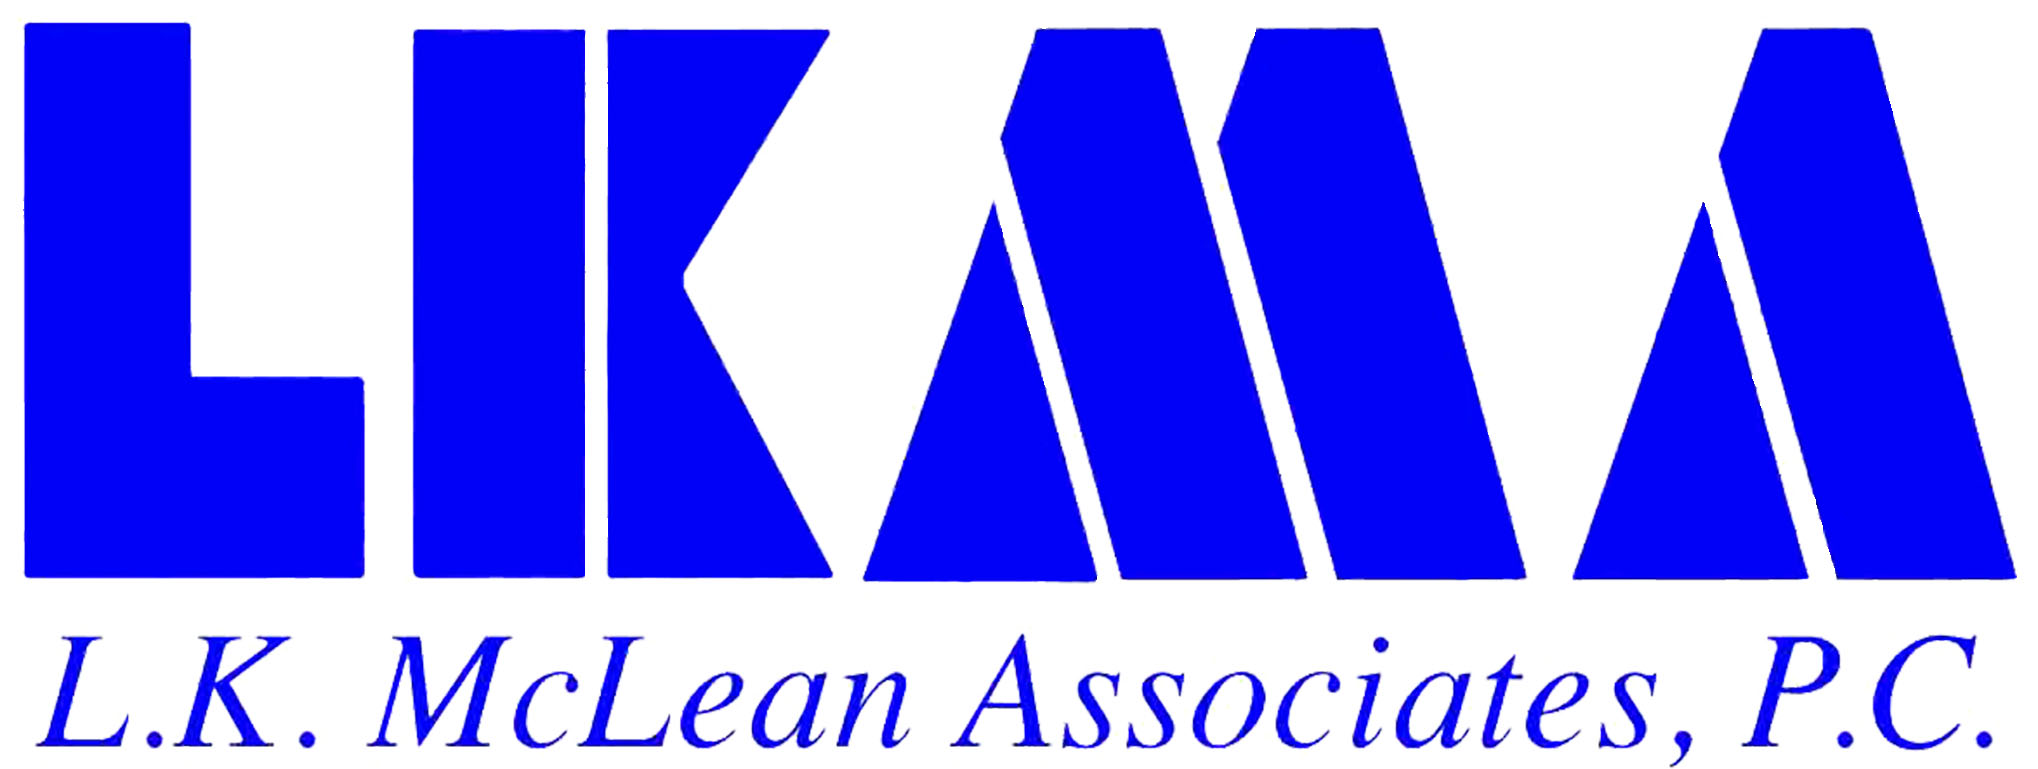 L. K. McLean Associates, P.C.